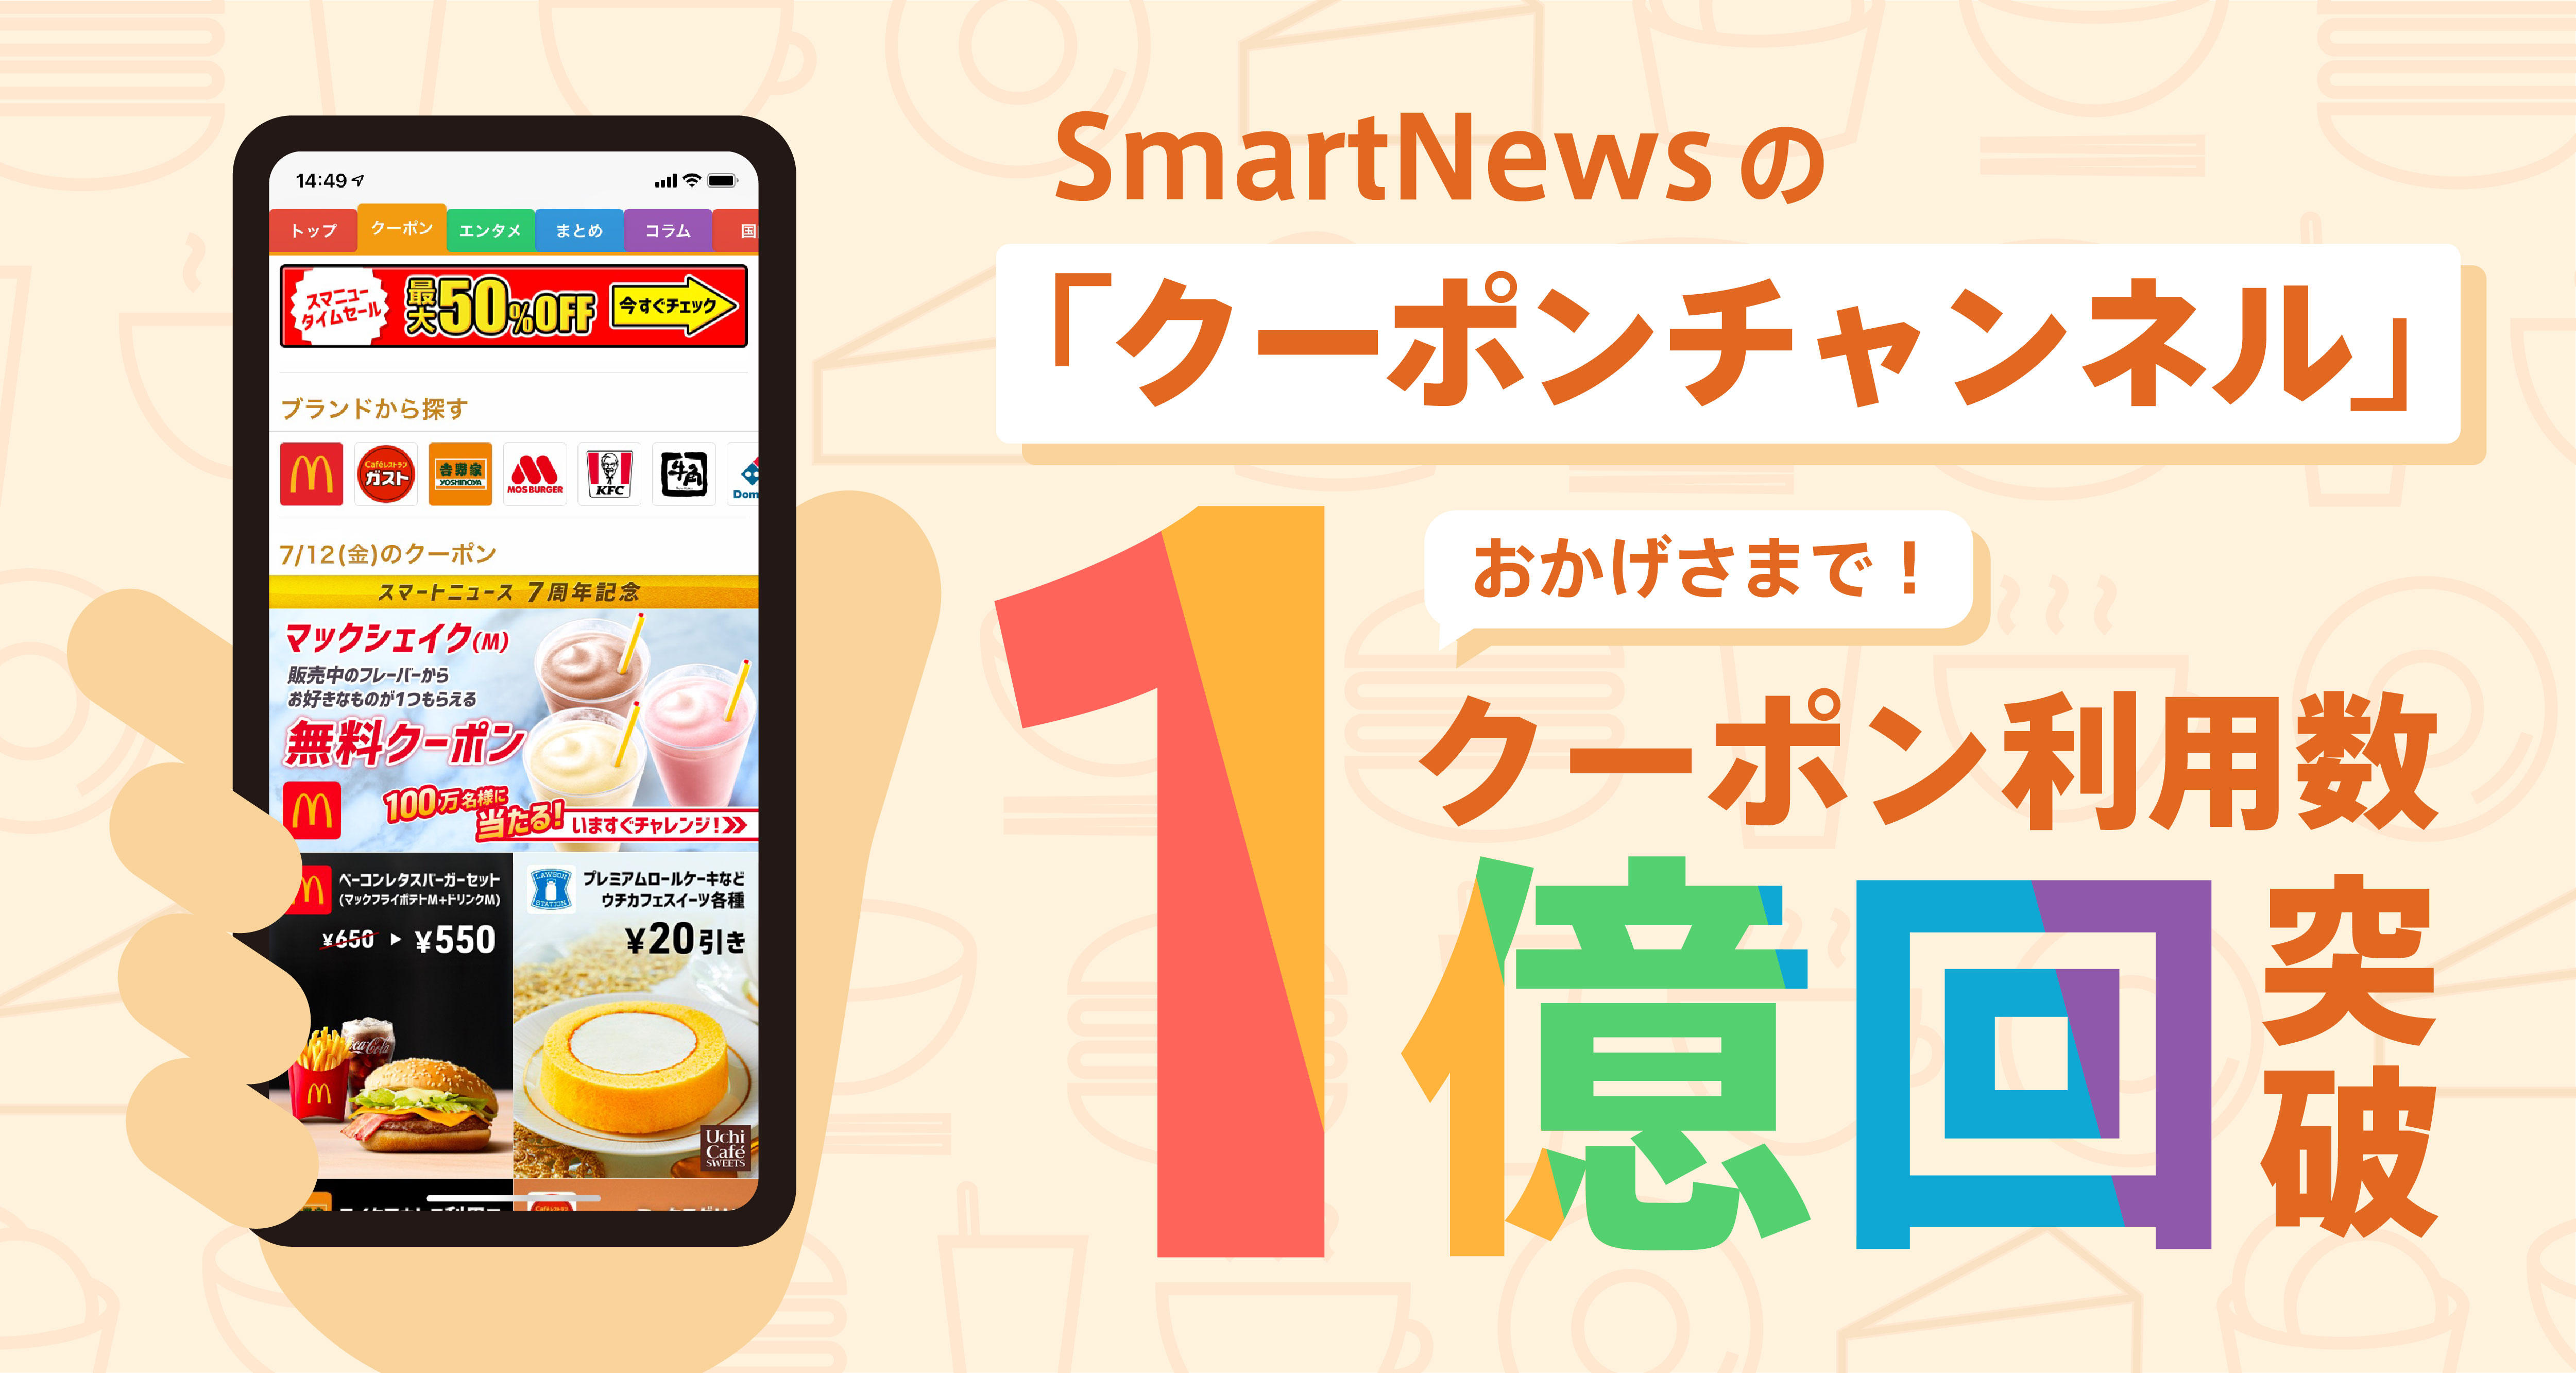 １億回以上も使われている Smartnews クーポンチャンネル スマートニュース株式会社のプレスリリース